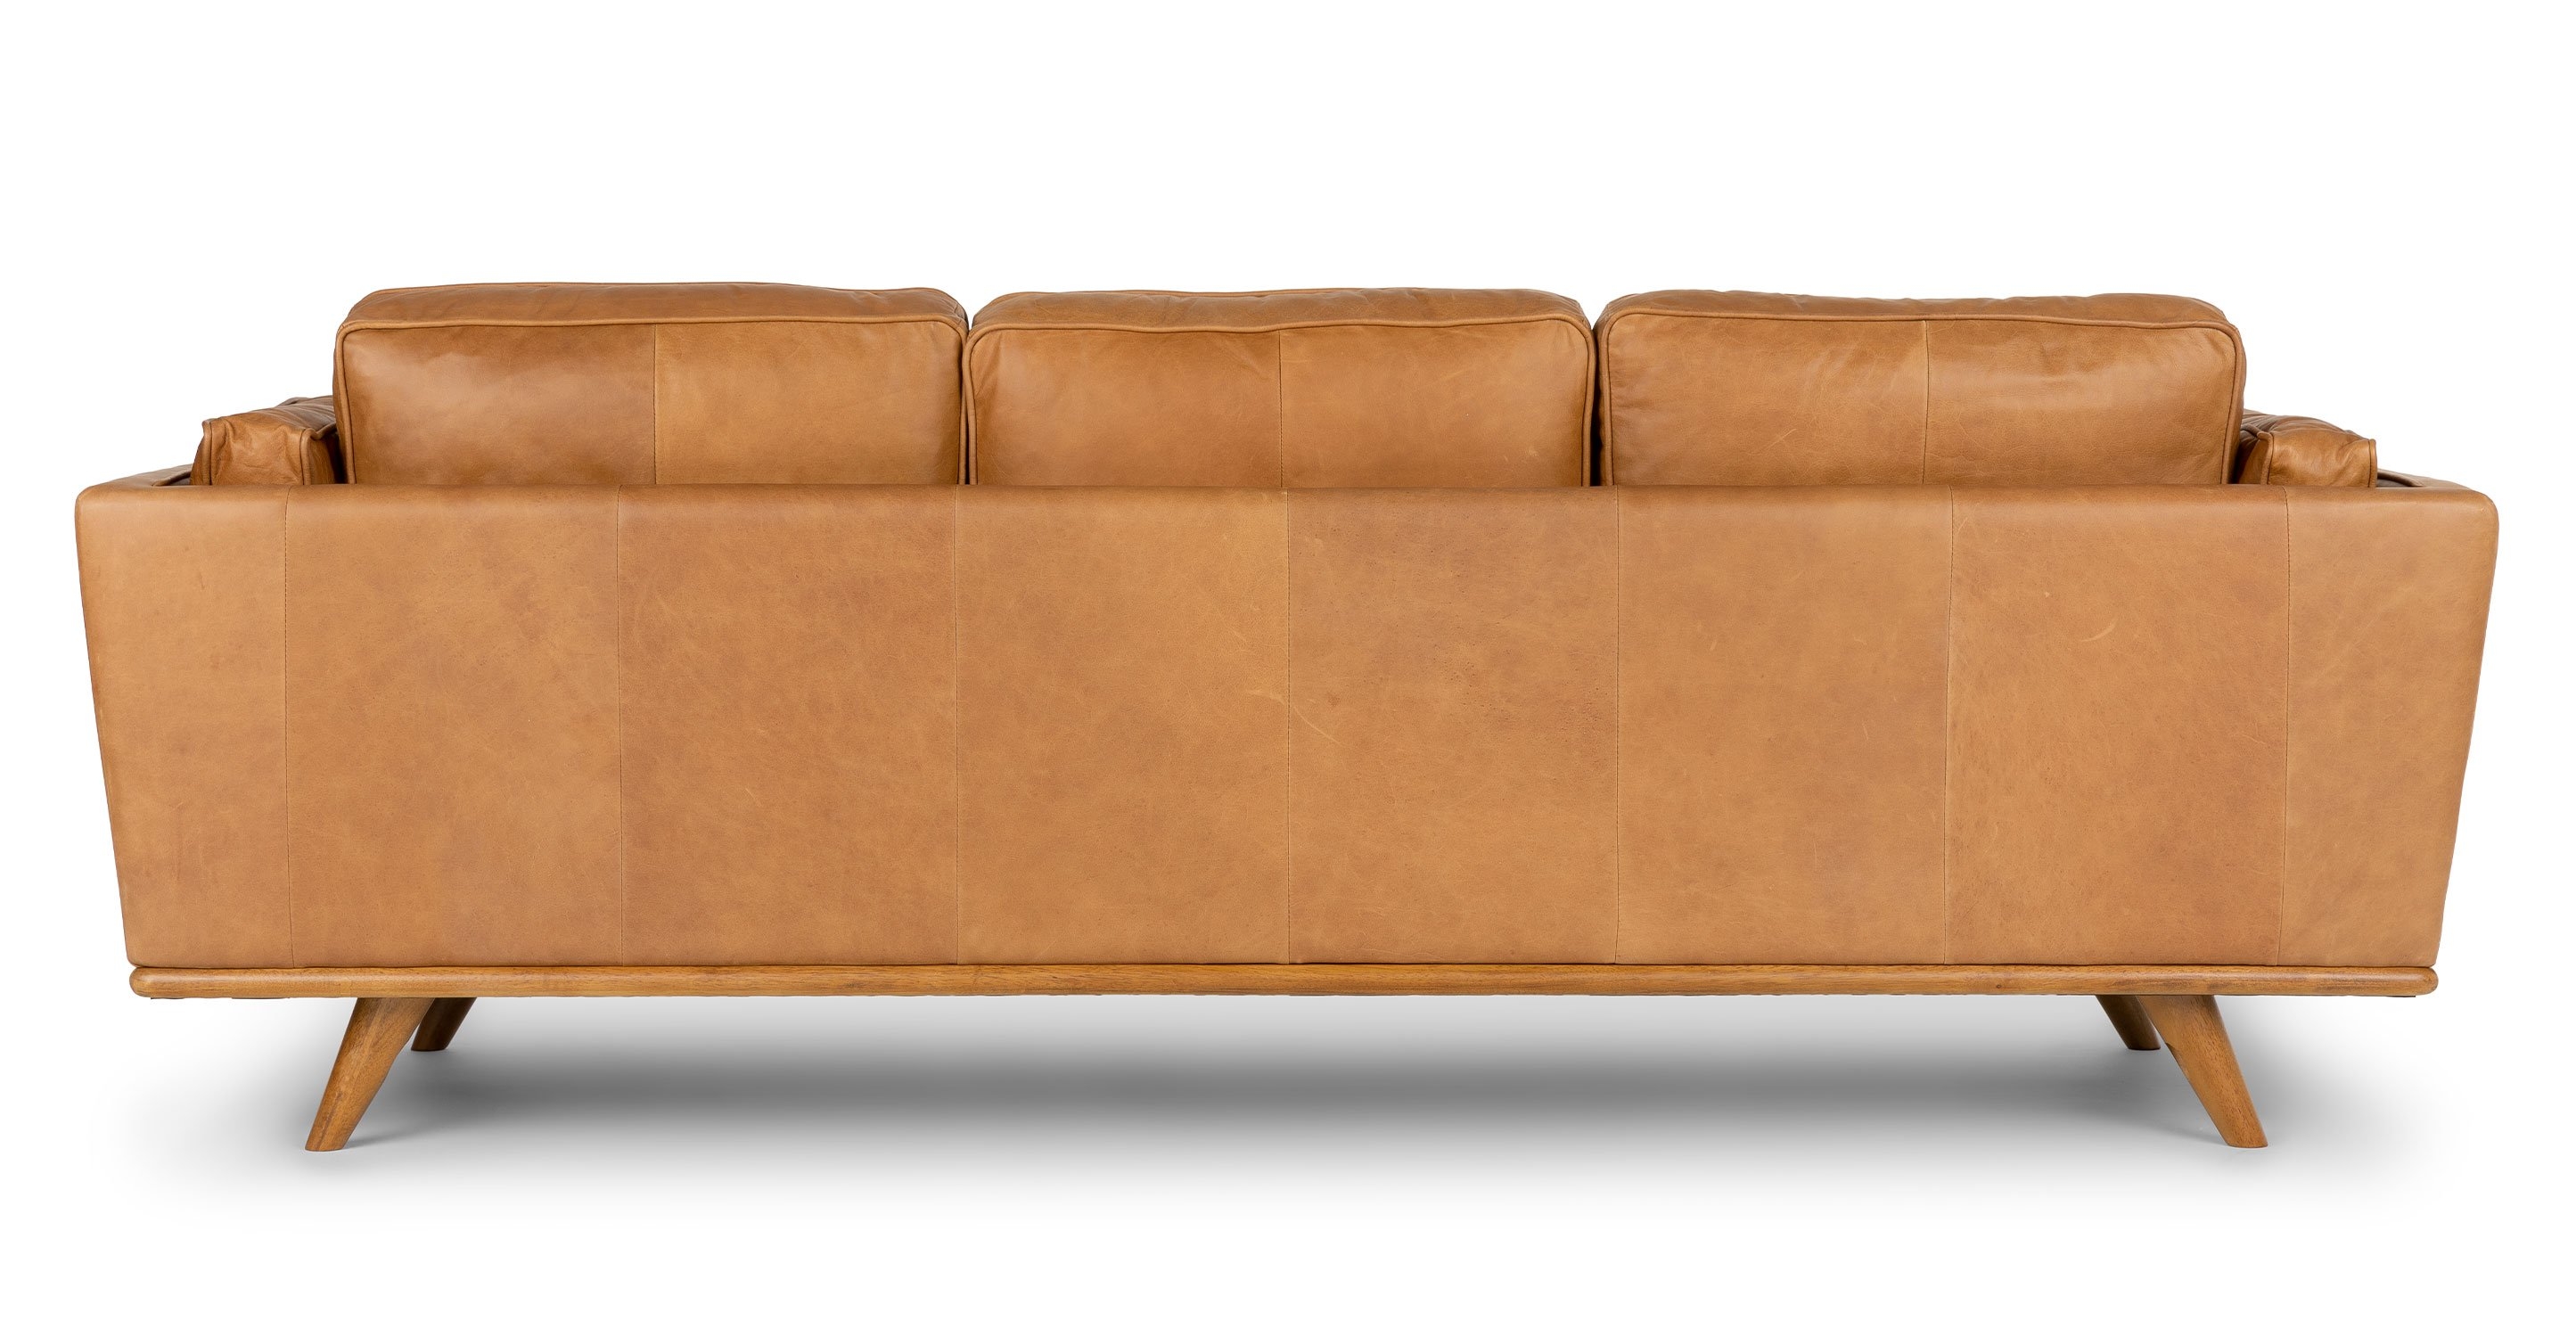 Timber Charme Tan Sofa - Image 2